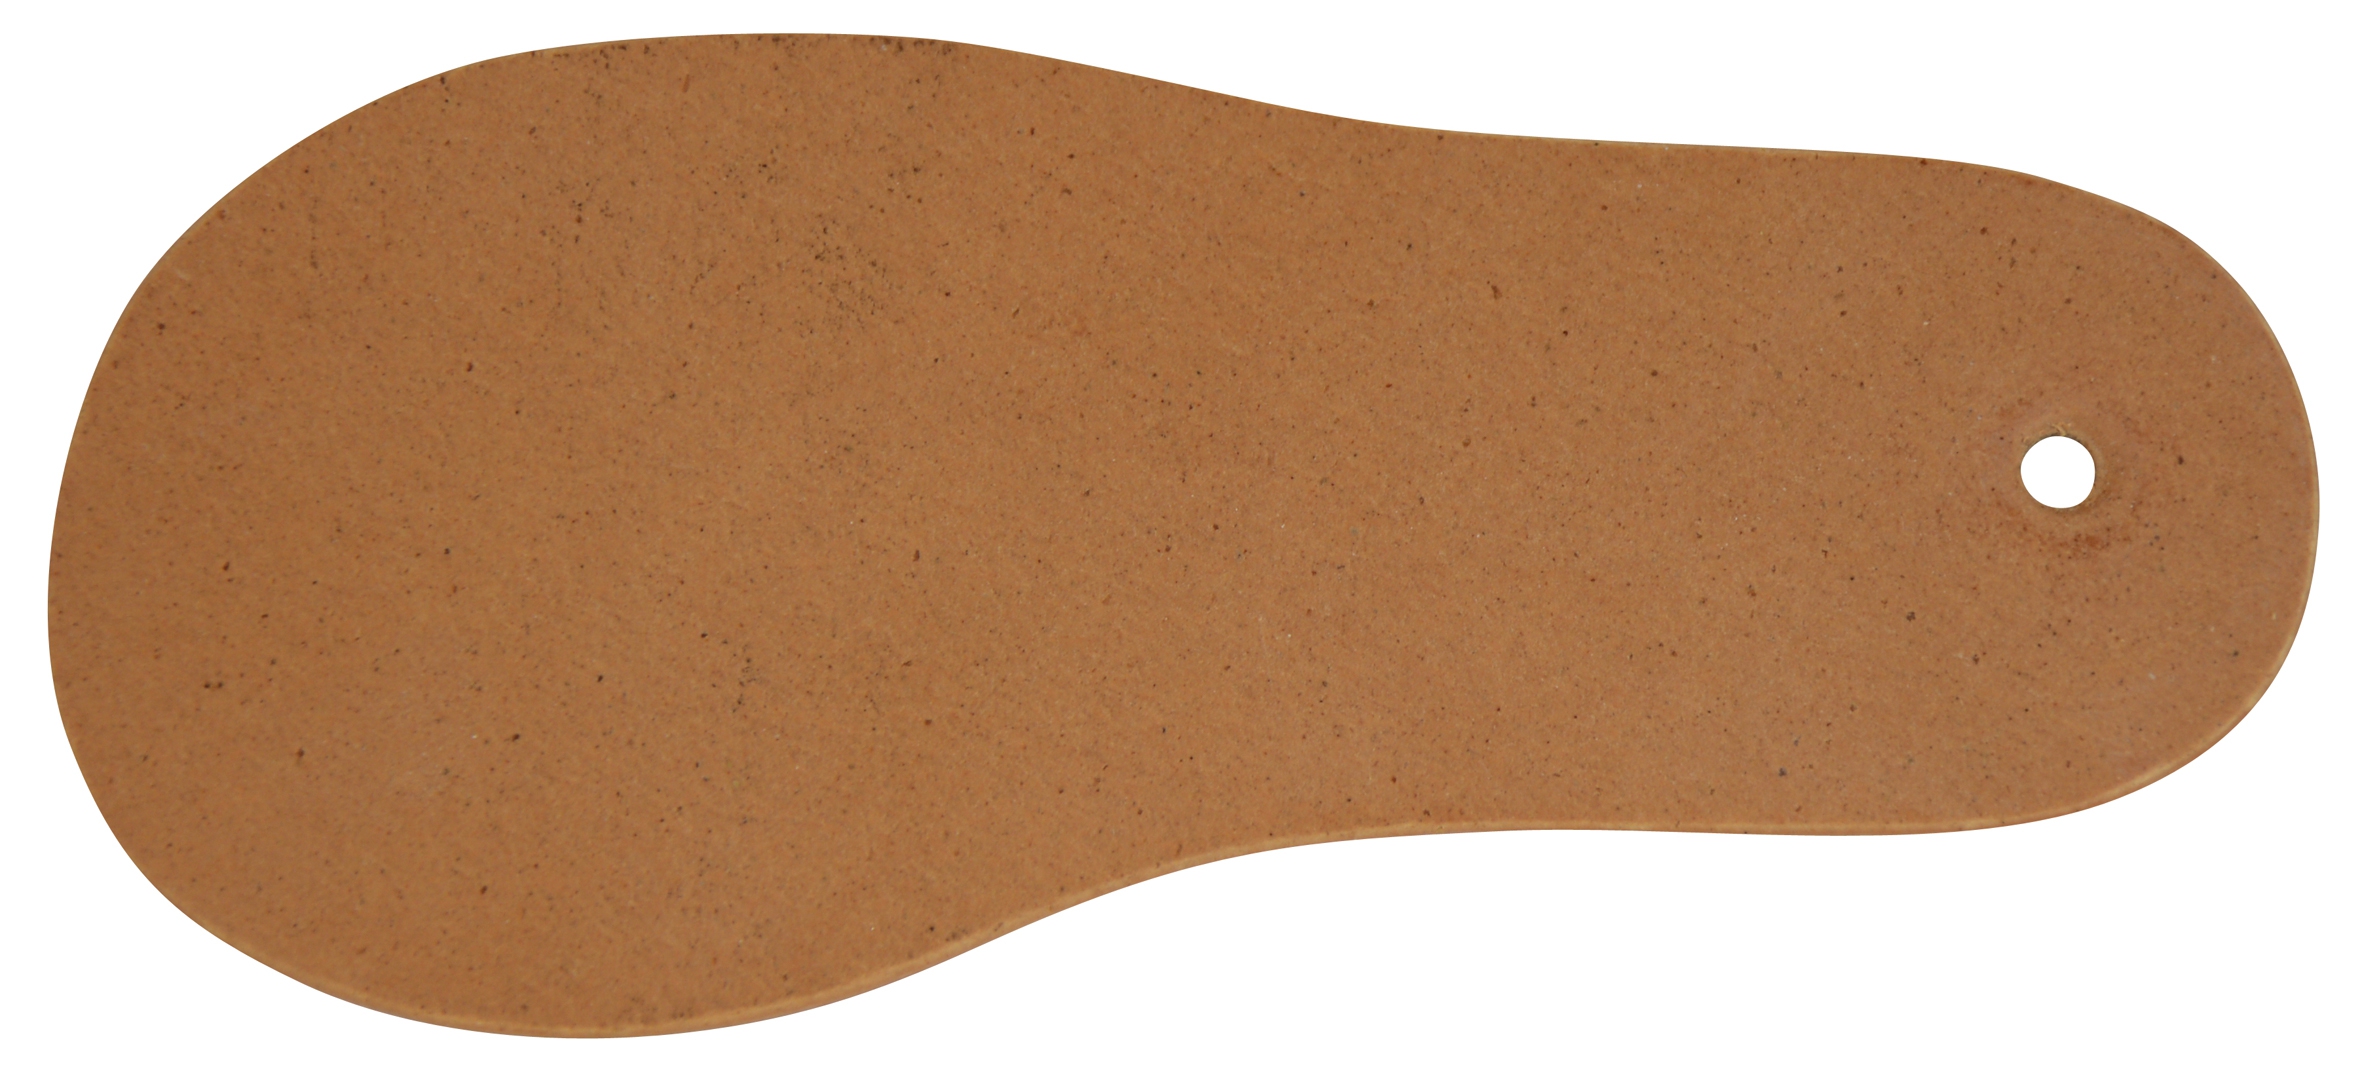 Plaques en semi cuir pour les bases des semelles classiques  59-507